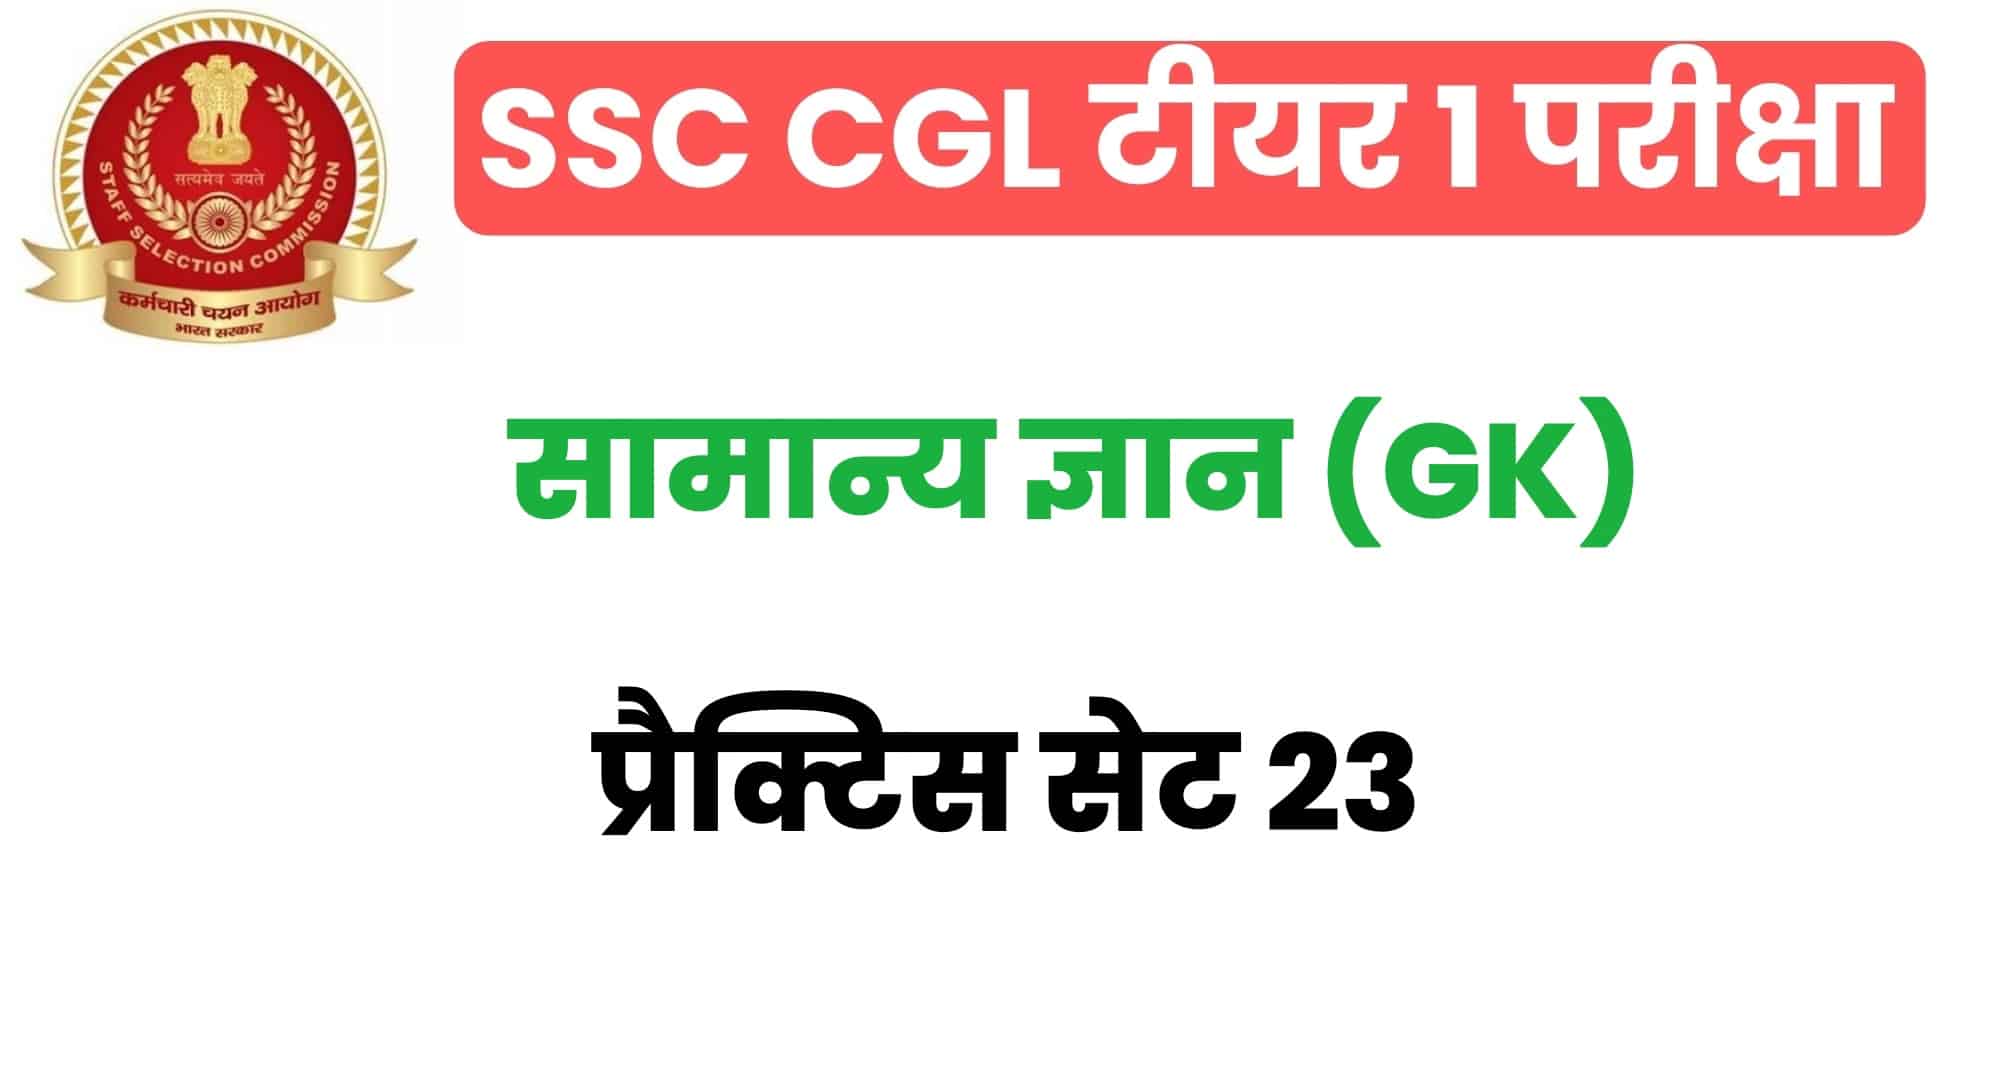 SSC CGL GK/GS प्रैक्टिस सेट 23 : परीक्षा में जाने से पहले इन महत्वपूर्ण प्रश्नों का  अवश्य अध्ययन करें